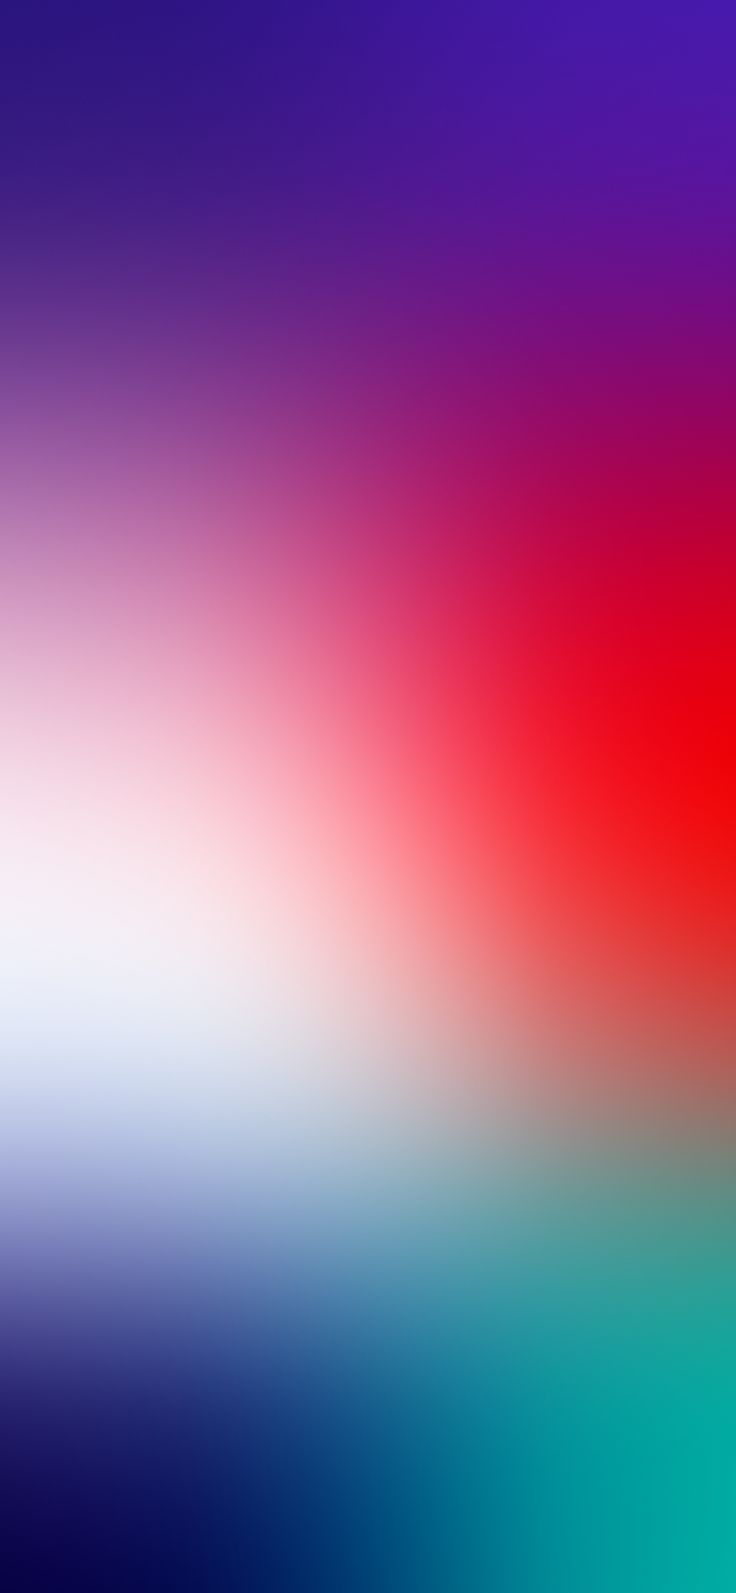 watchOS 7.6 gradient blur by EvgeniyZemelko. iPhone wallpaper, iPhone wallpaper blur, Best iphone wallpaper